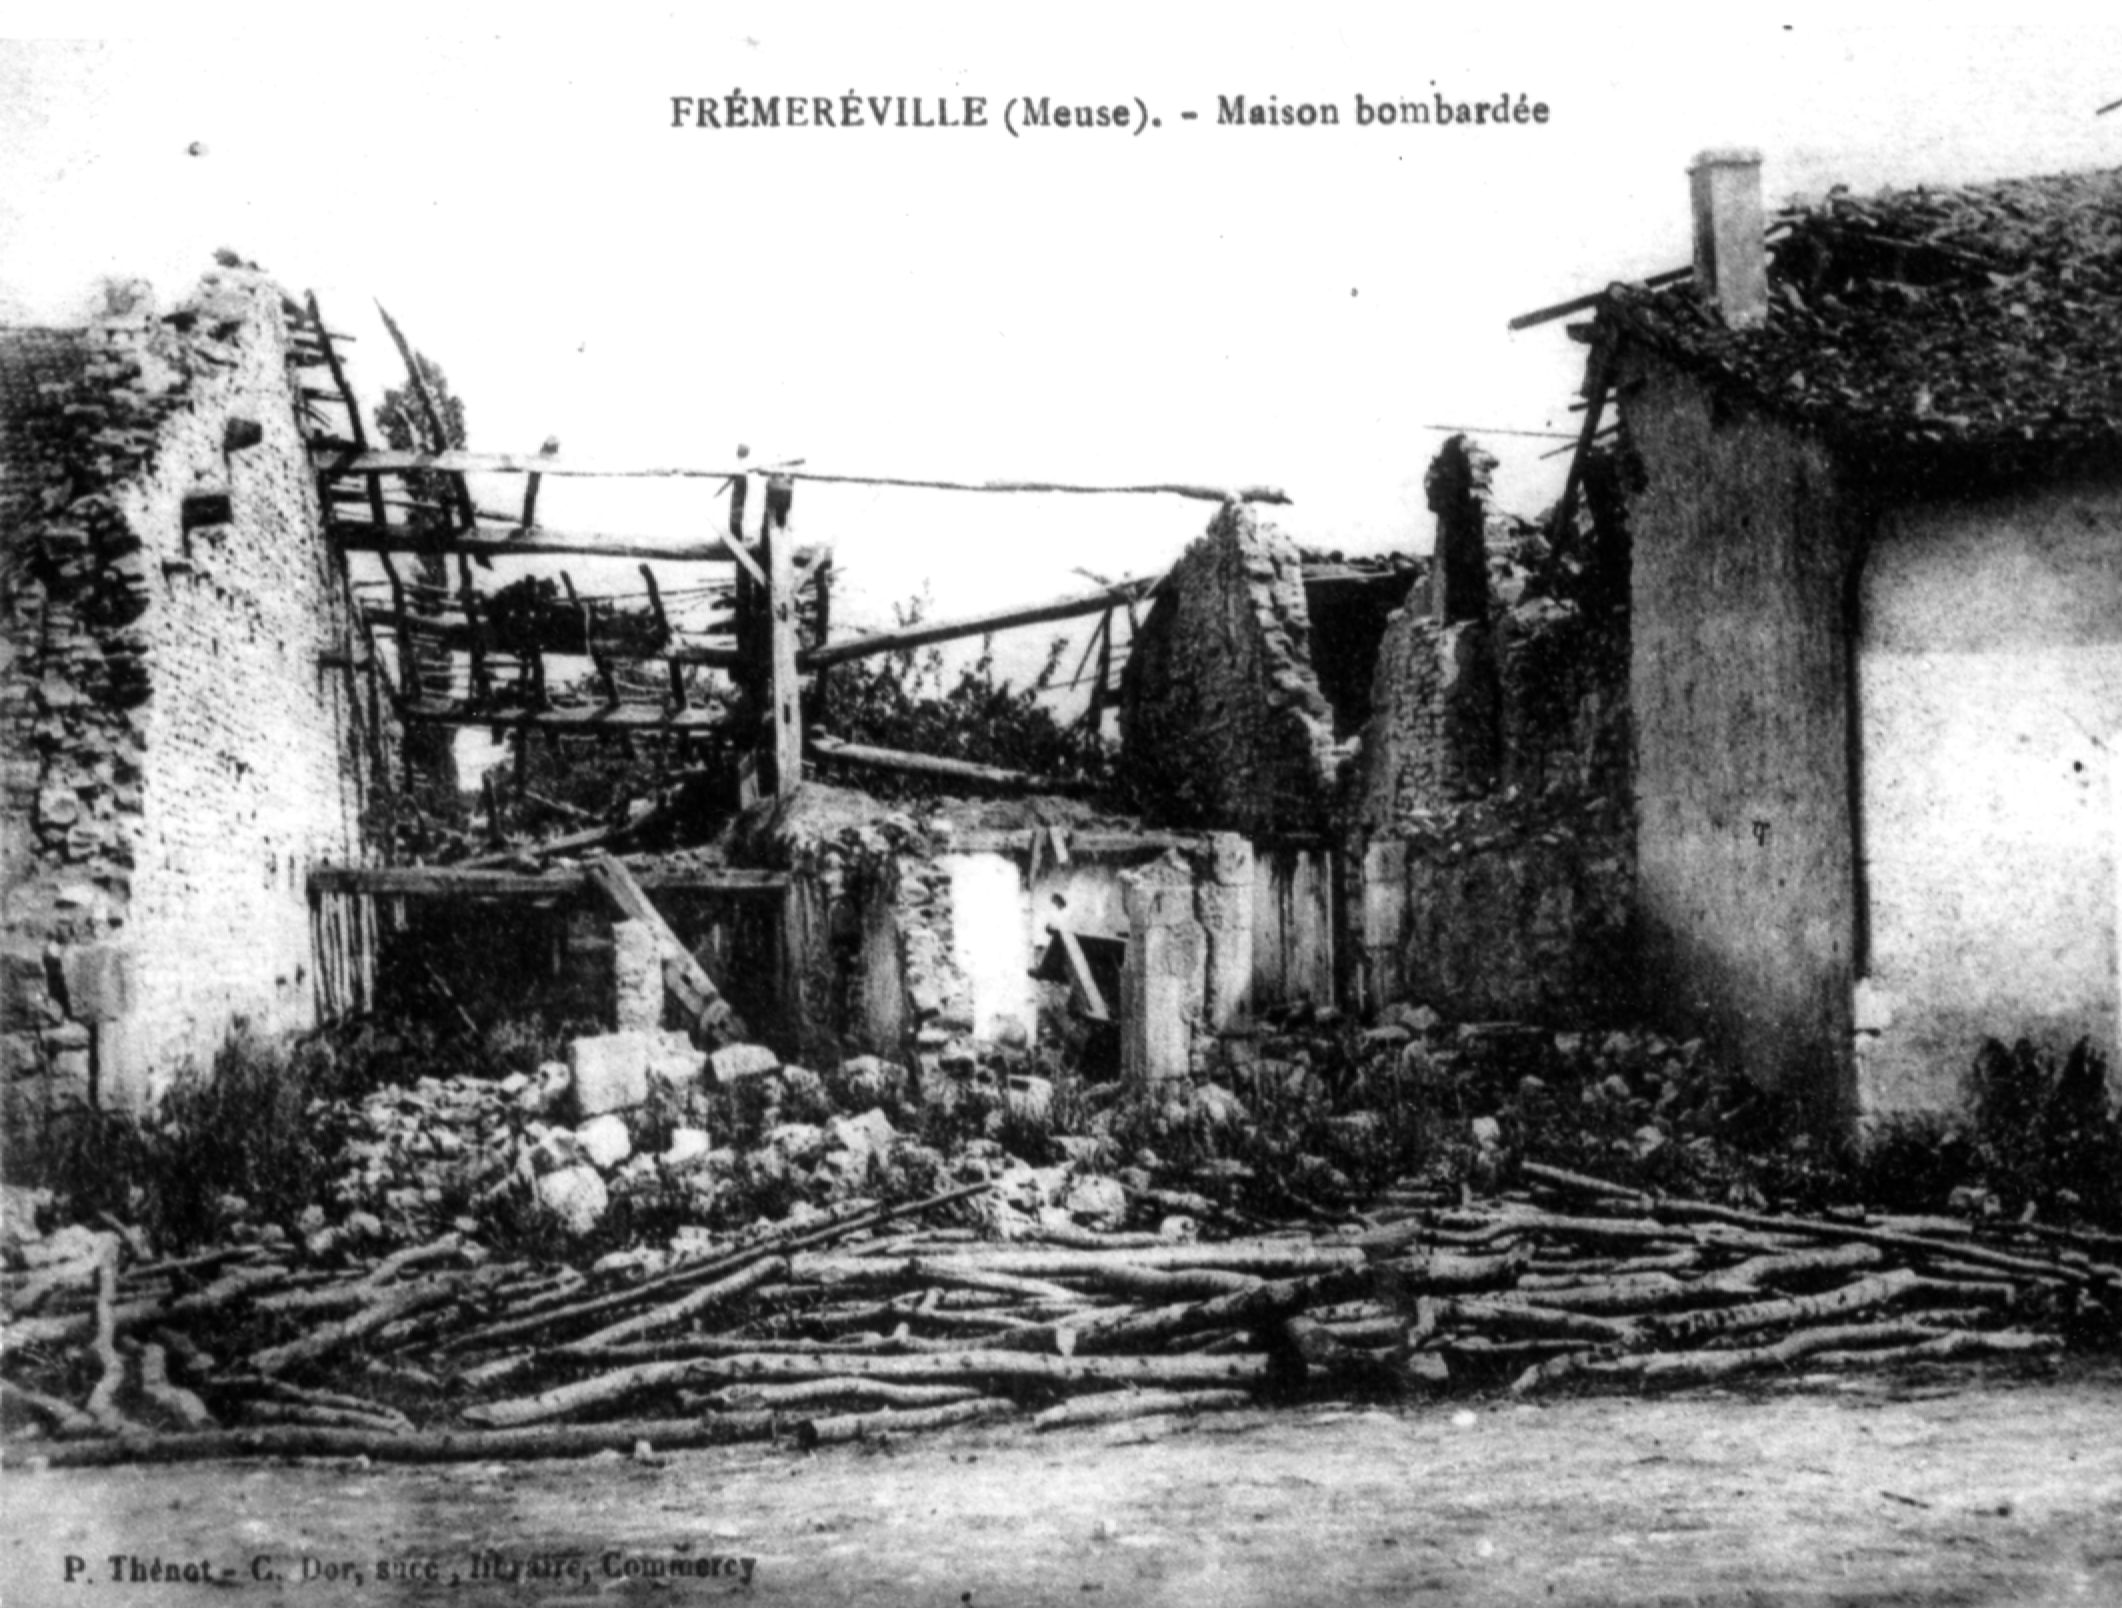 Frmerville, les ruinnes des bombardements en 1914-1918